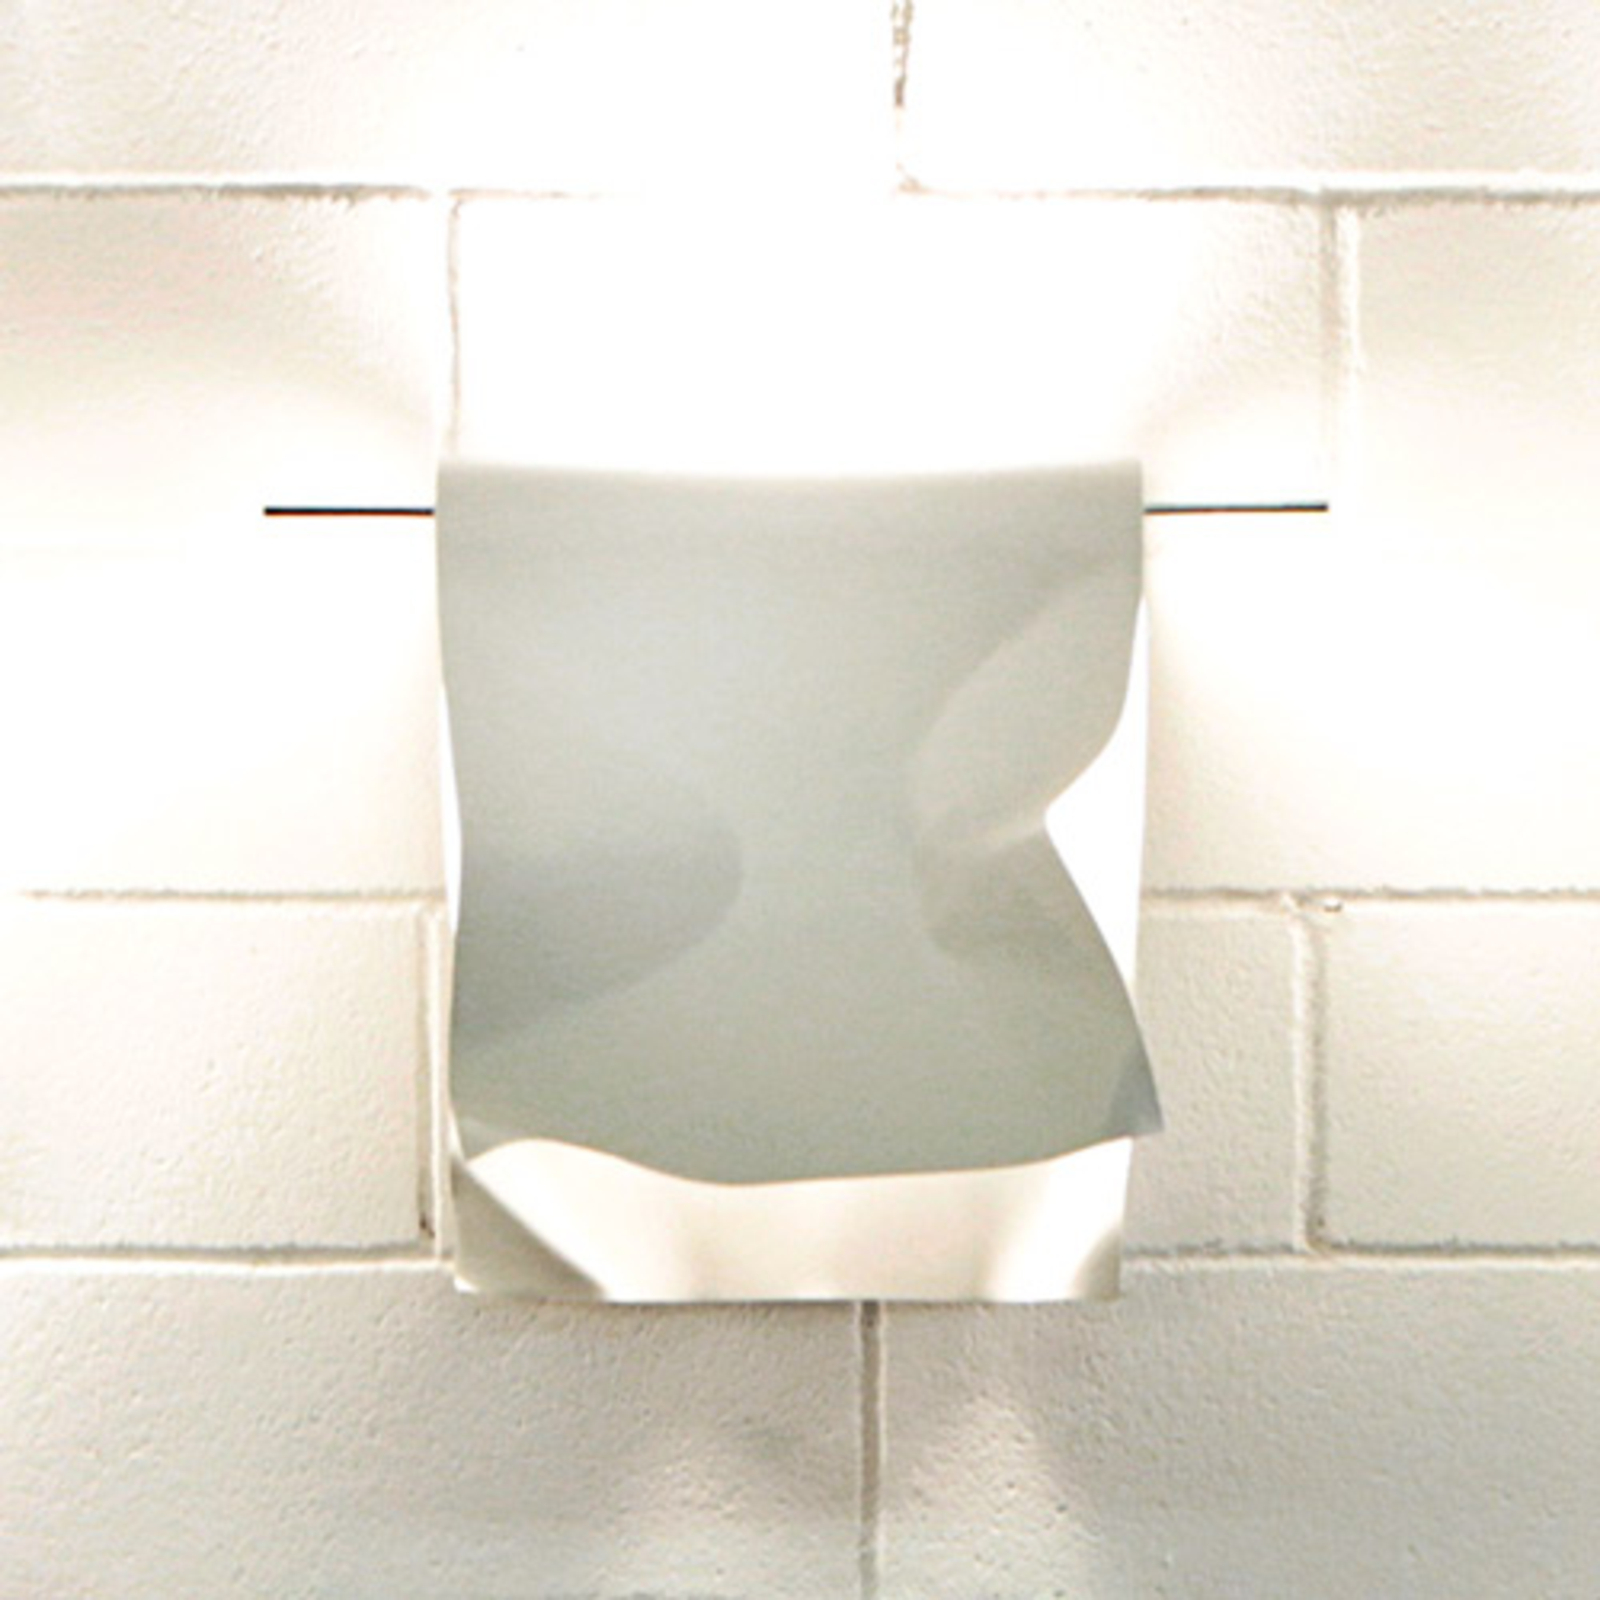 Knikerboker Stendimi - witte LED wandlamp 40 cm